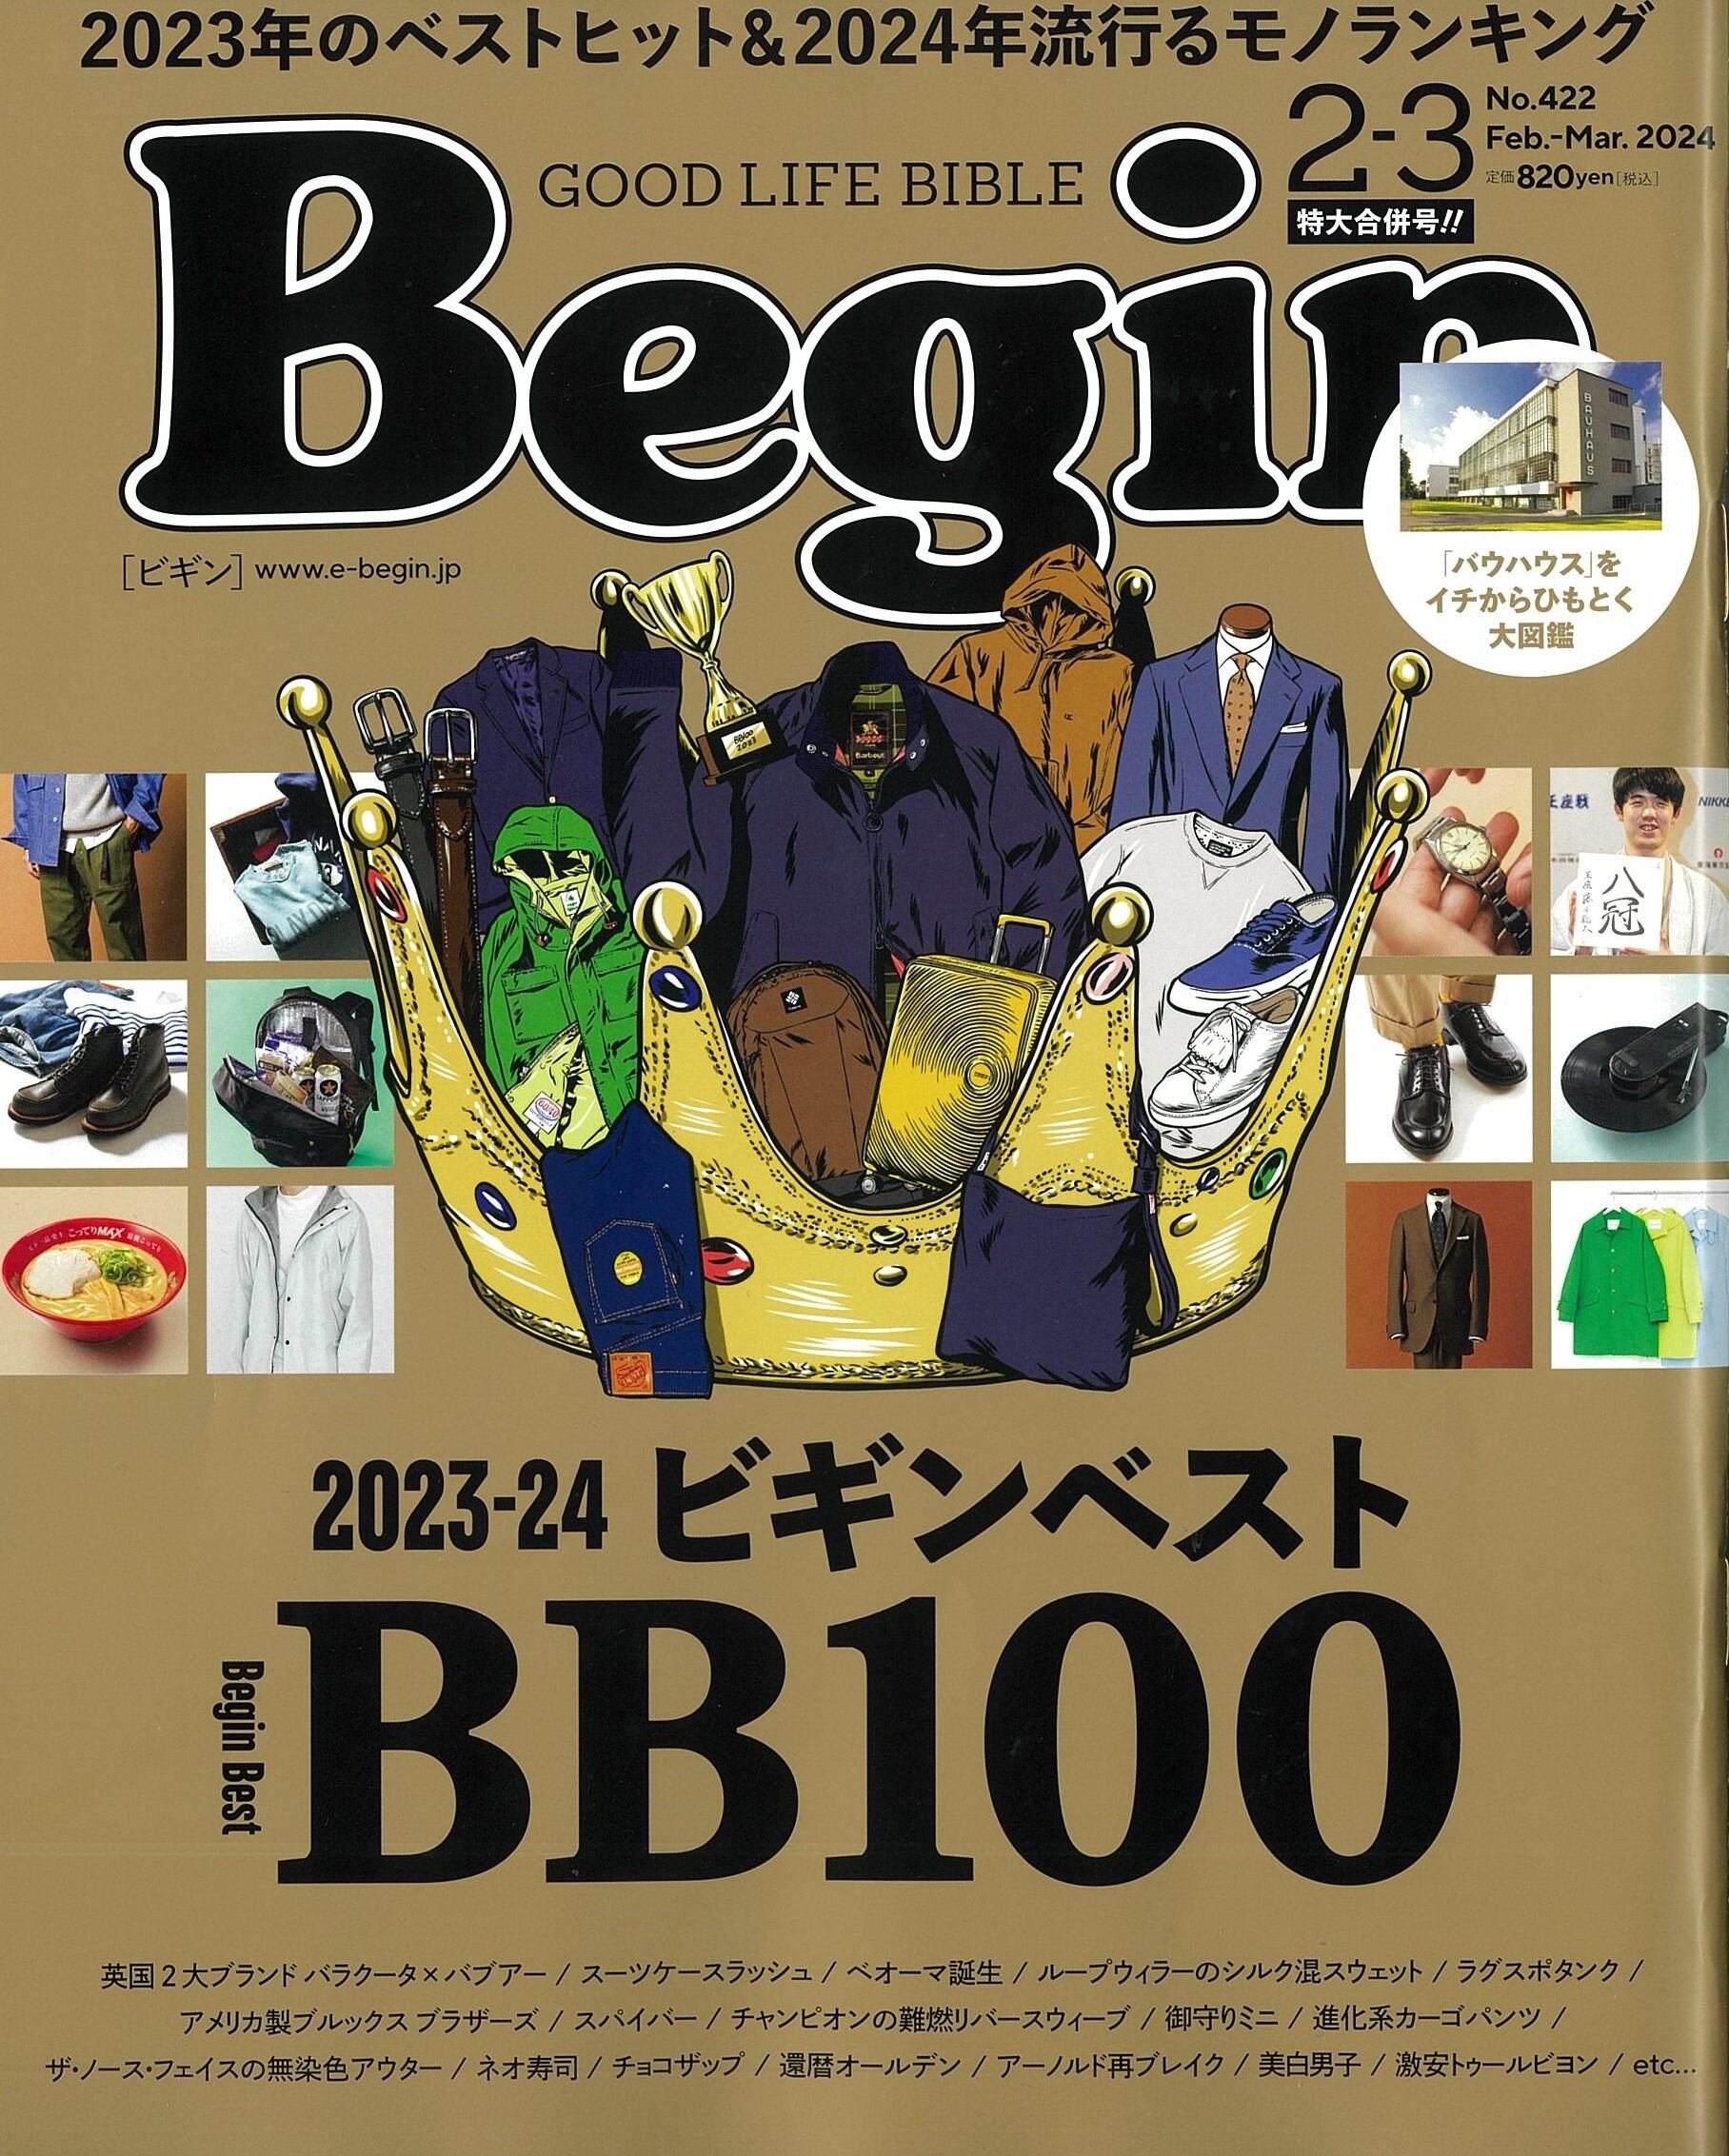 ビギン』2-3月号「2023-2024 Begin Best 100」に選ばれました